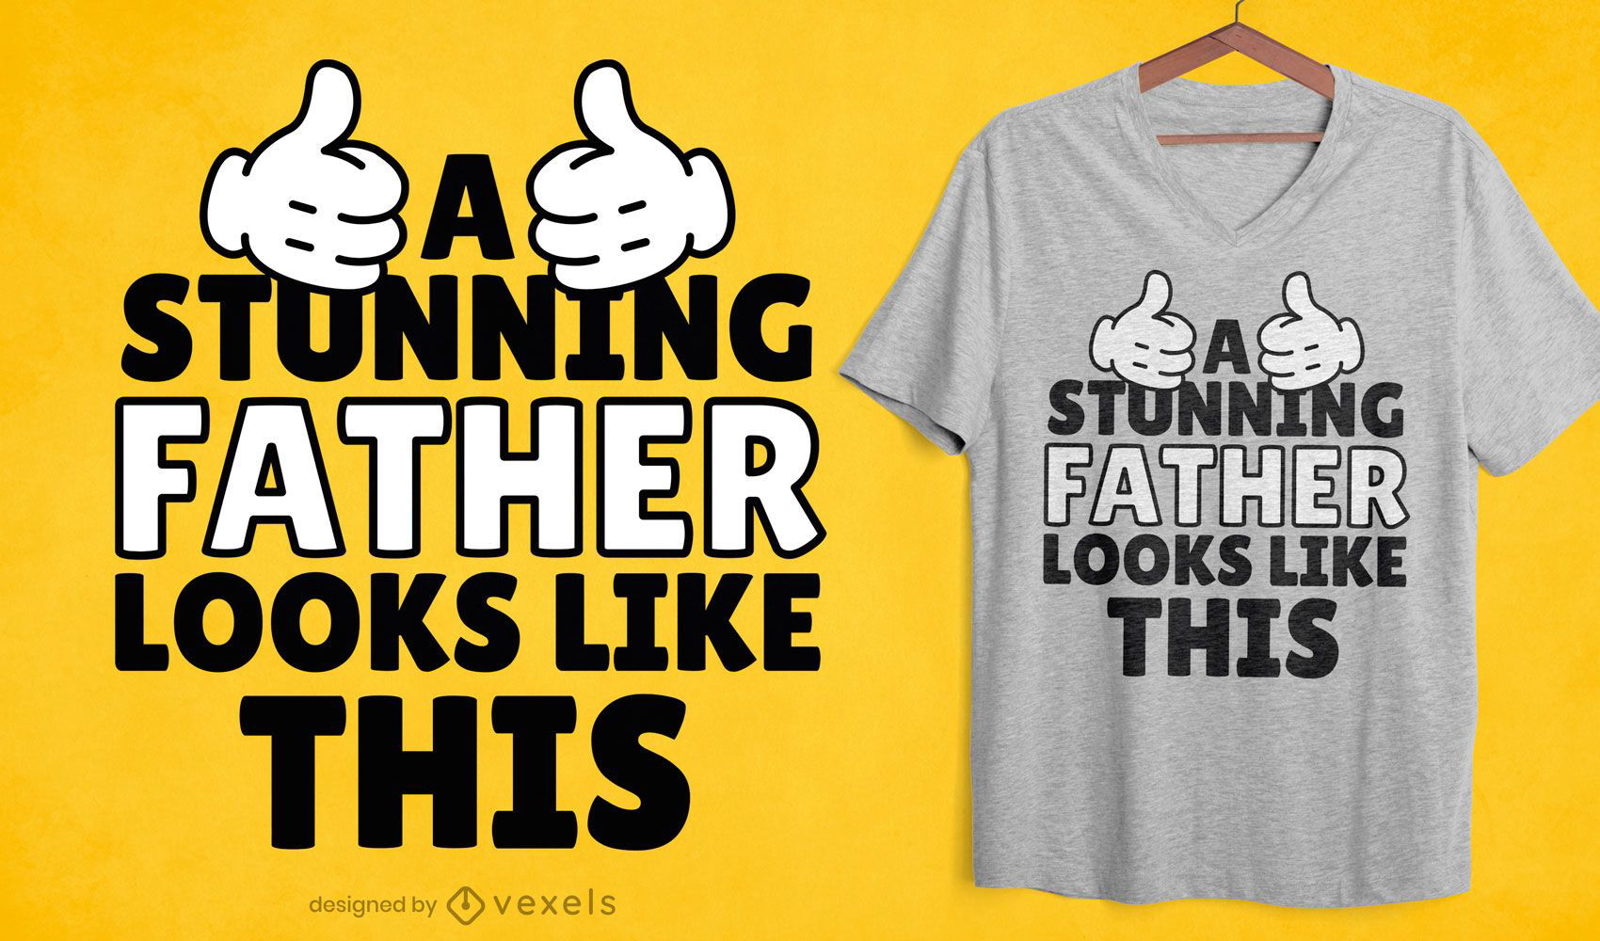 Impressionante design de camisetas para o pai